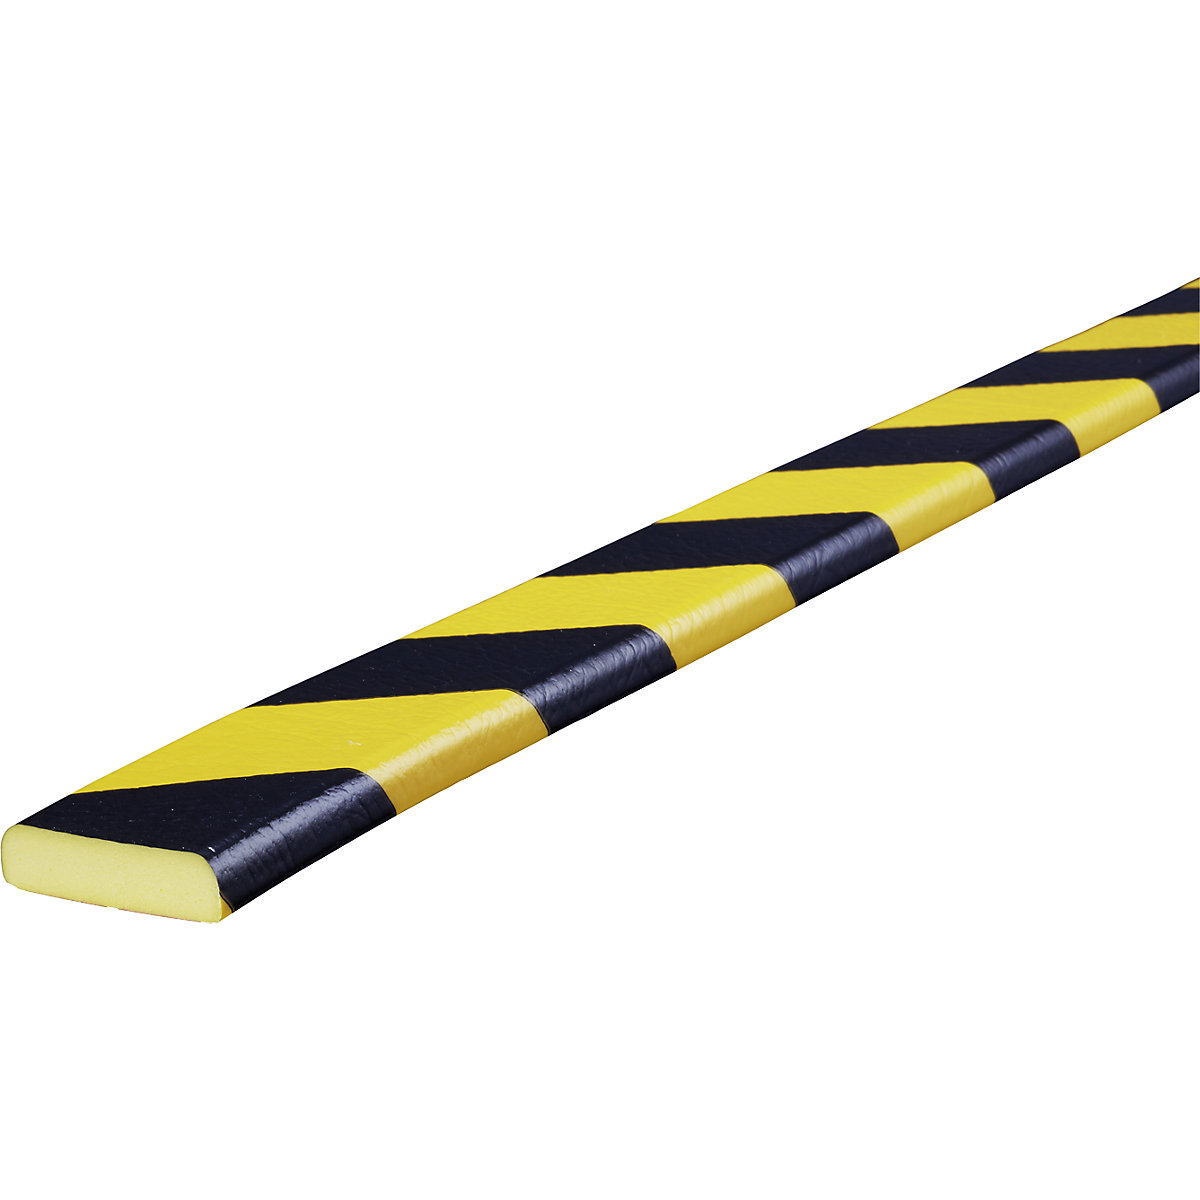 Protection des surfaces Knuffi® – SHG, type F, 1 rouleau de 5 m, noir / jaune